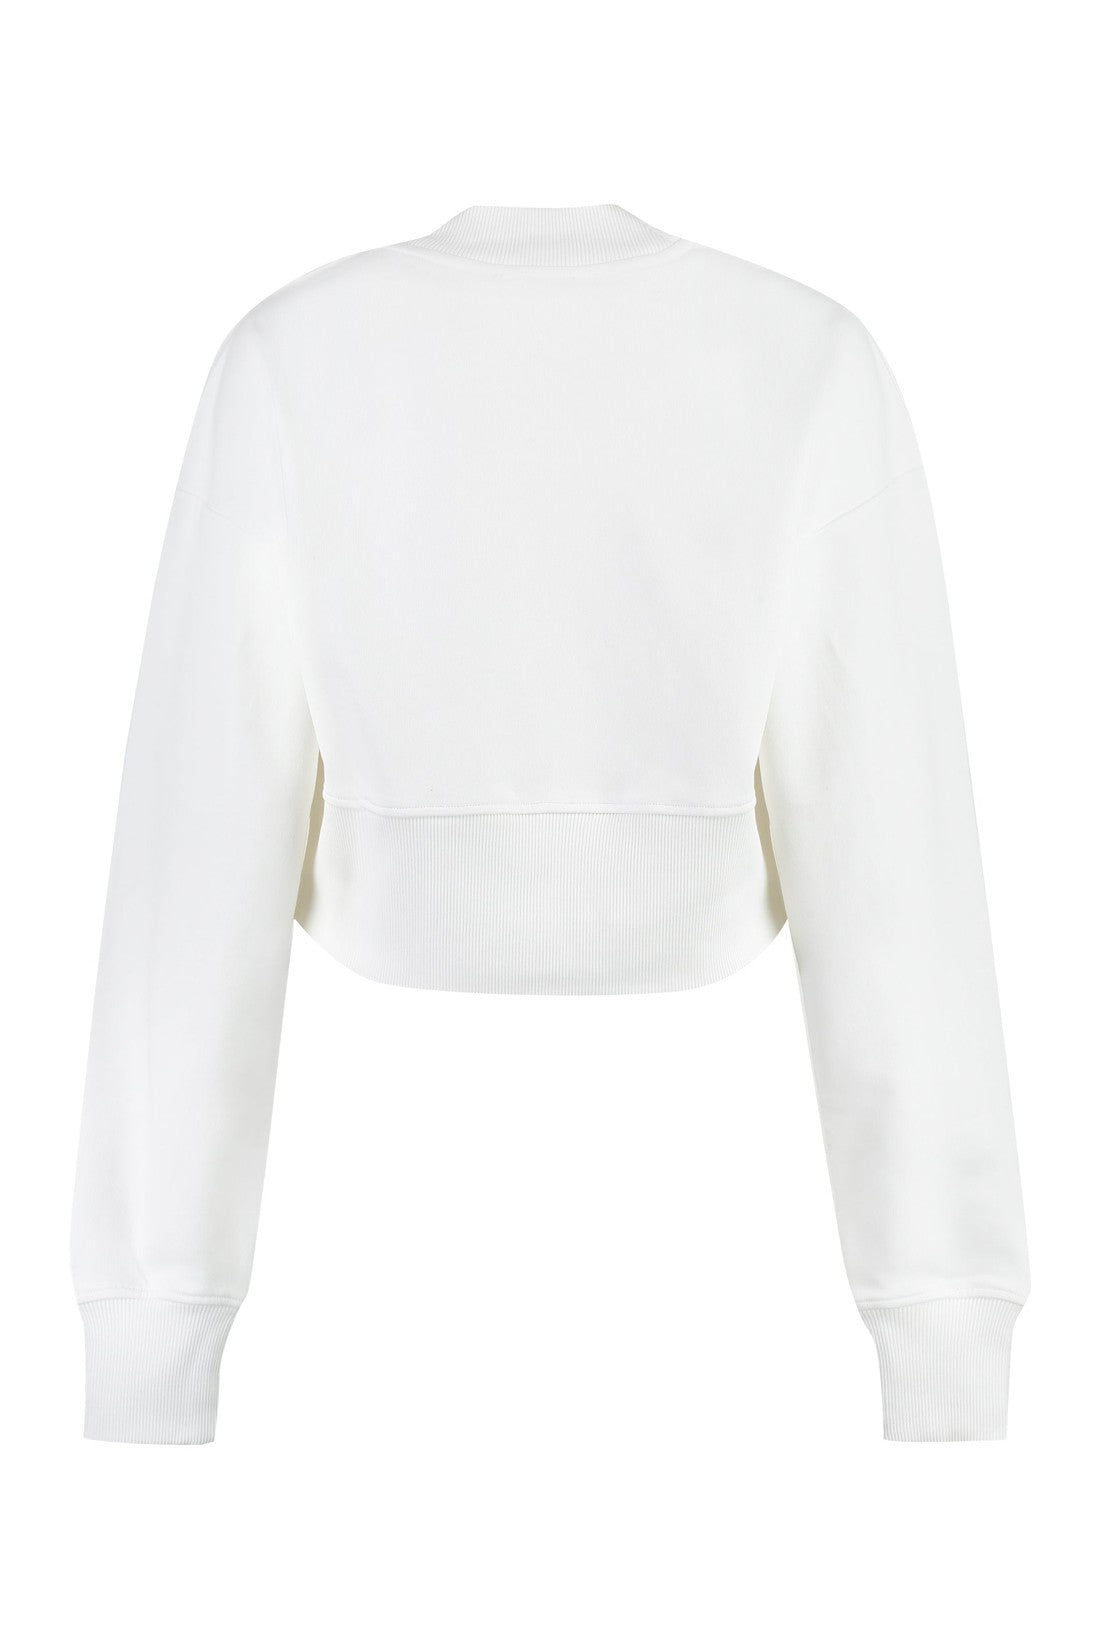 Balmain-OUTLET-SALE-Cotton crew-neck sweatshirt-ARCHIVIST